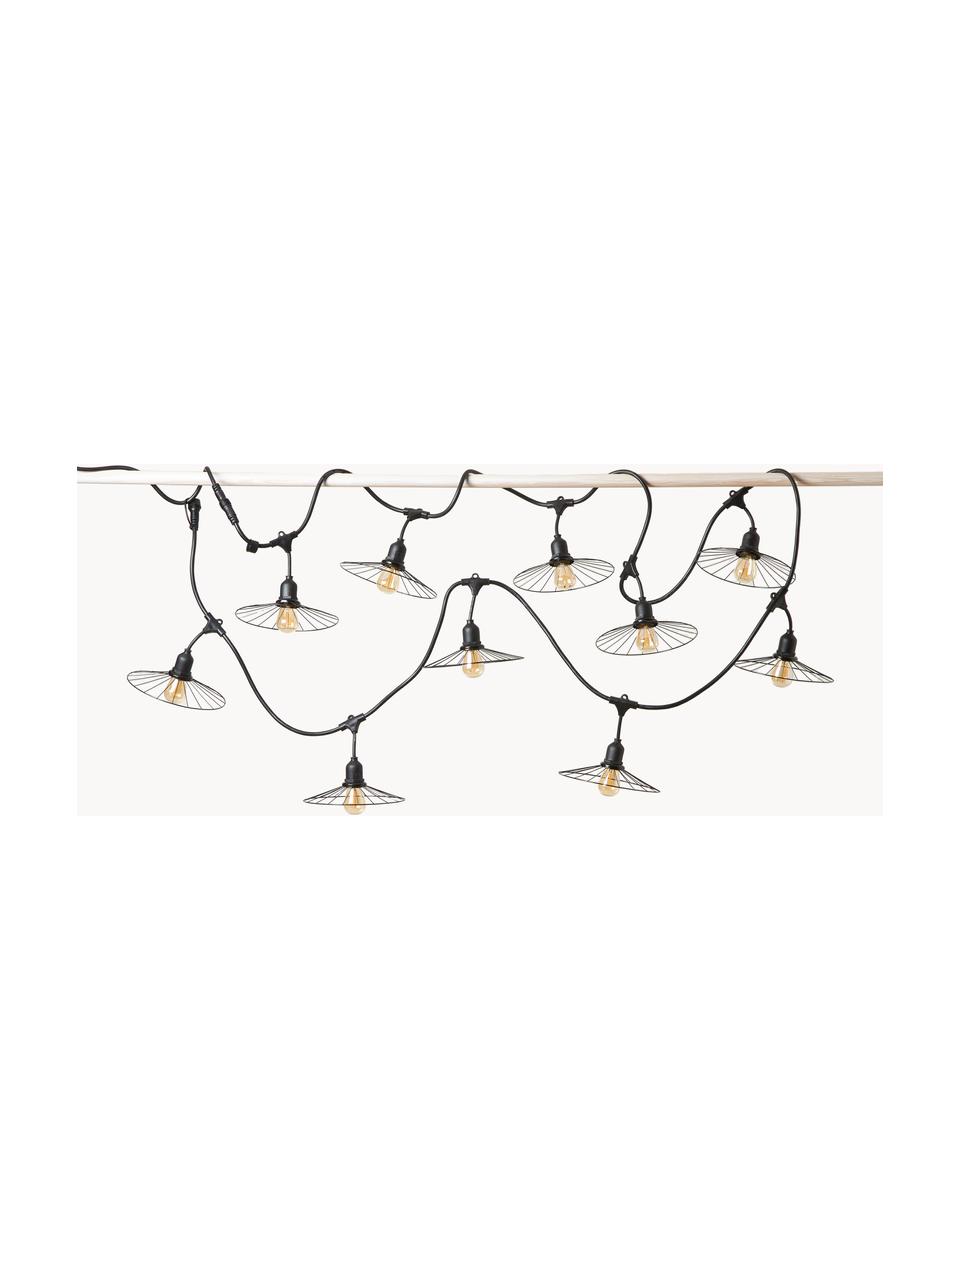 Exteriérová svetelná reťaz Chic, 600 cm, Čierna, D 600 cm, 10 žiaroviek